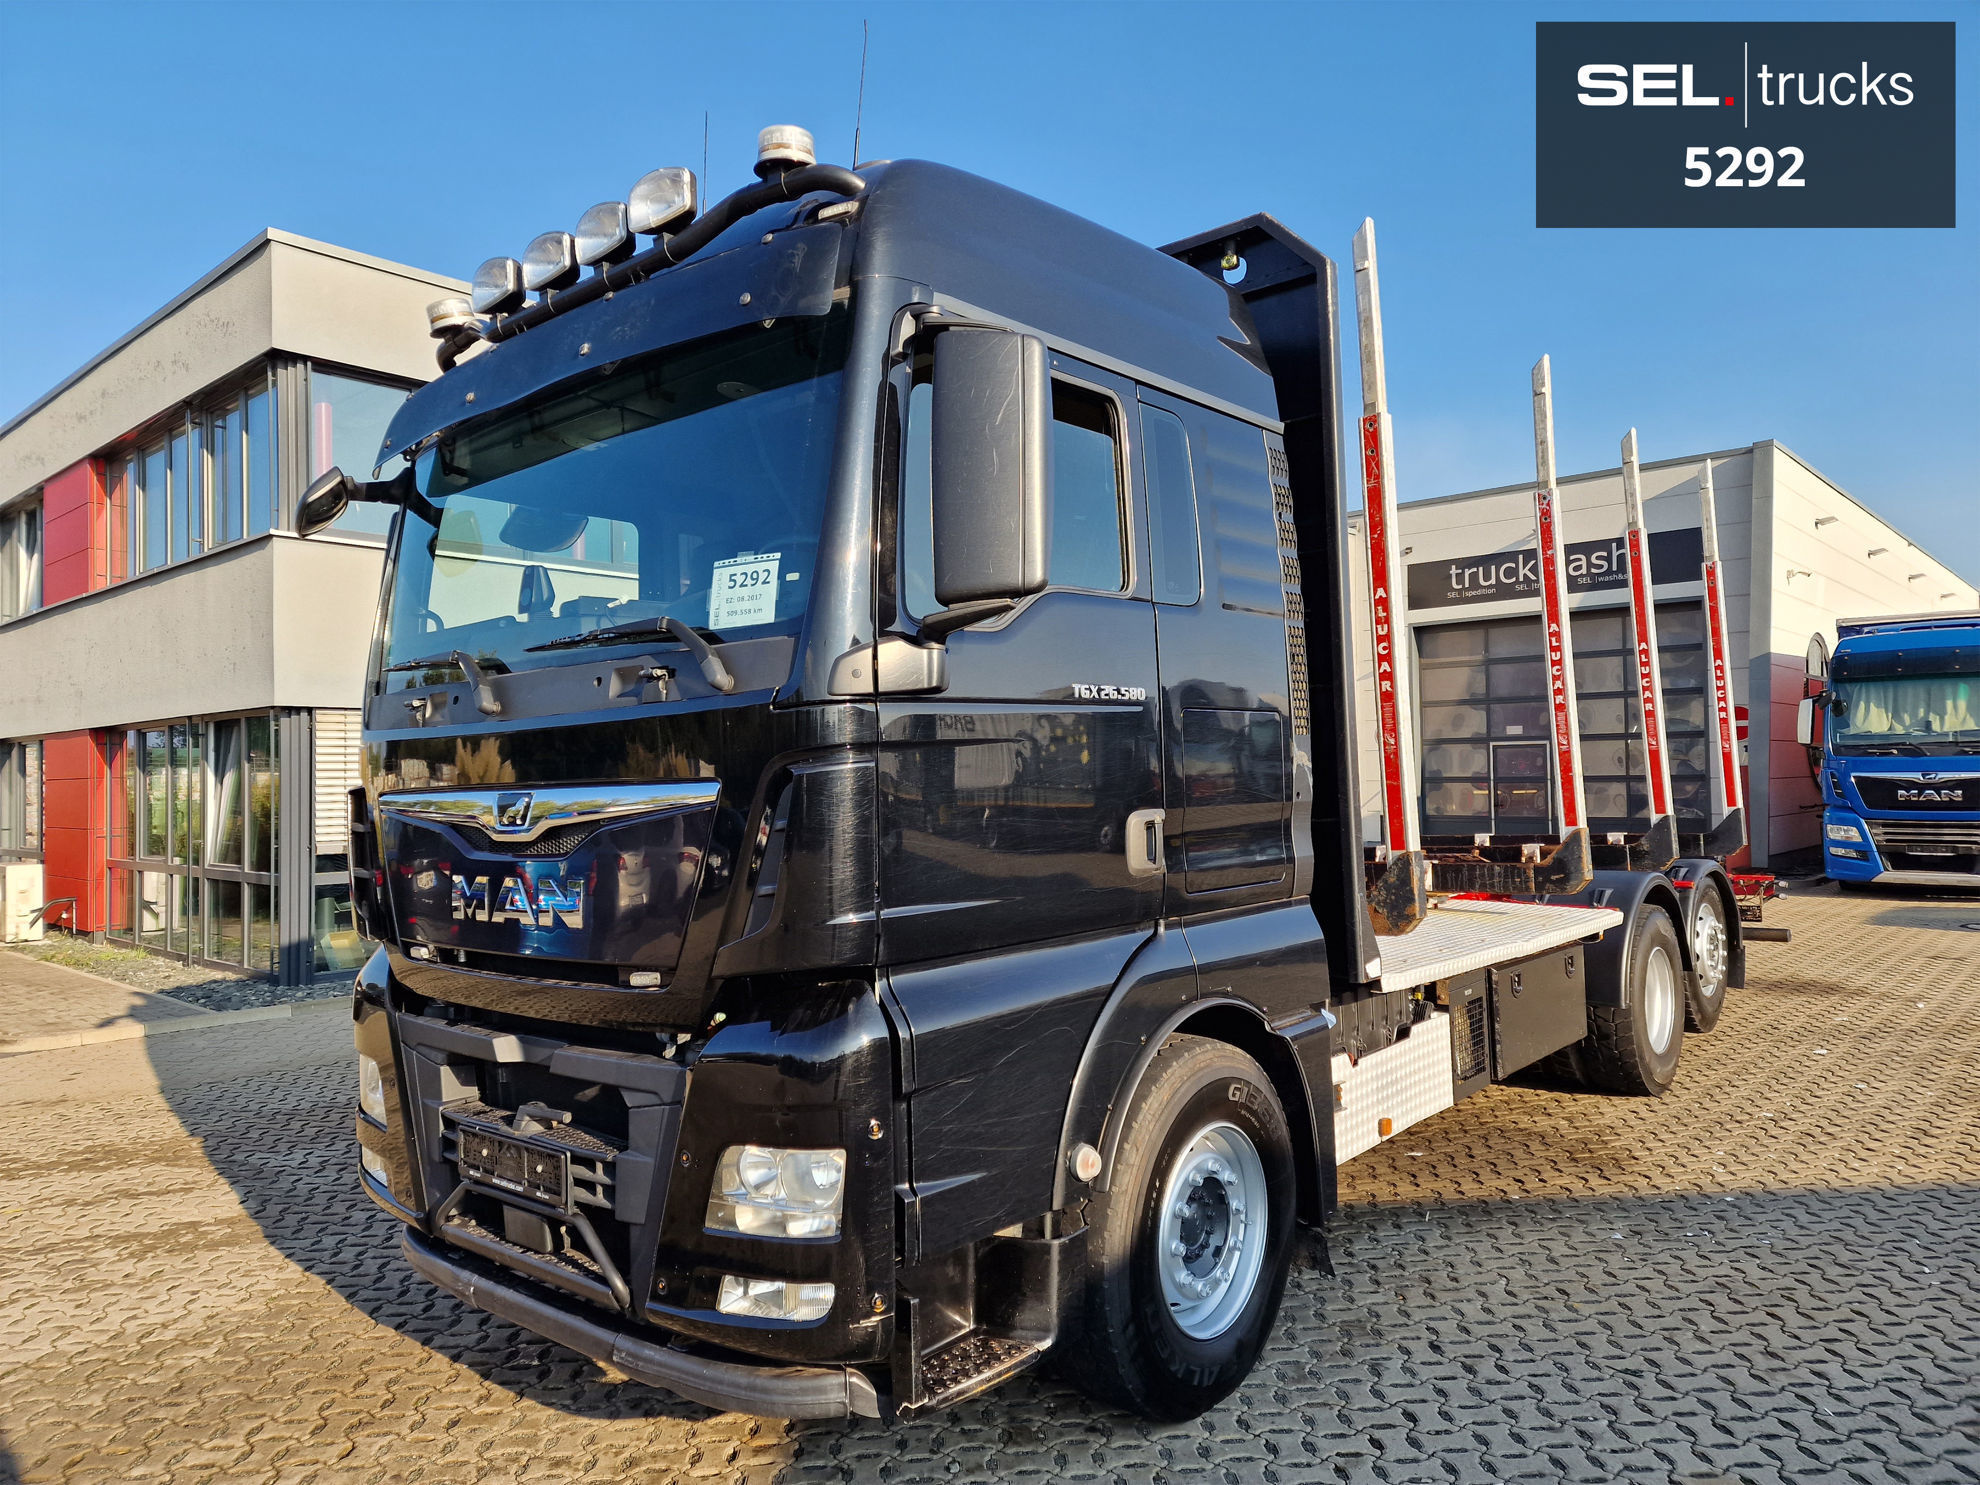 MAN TGX 26.500 6X2-4 LL Truck. SEL Trucks. Used trucks from Germany. Fast &  easy export service!